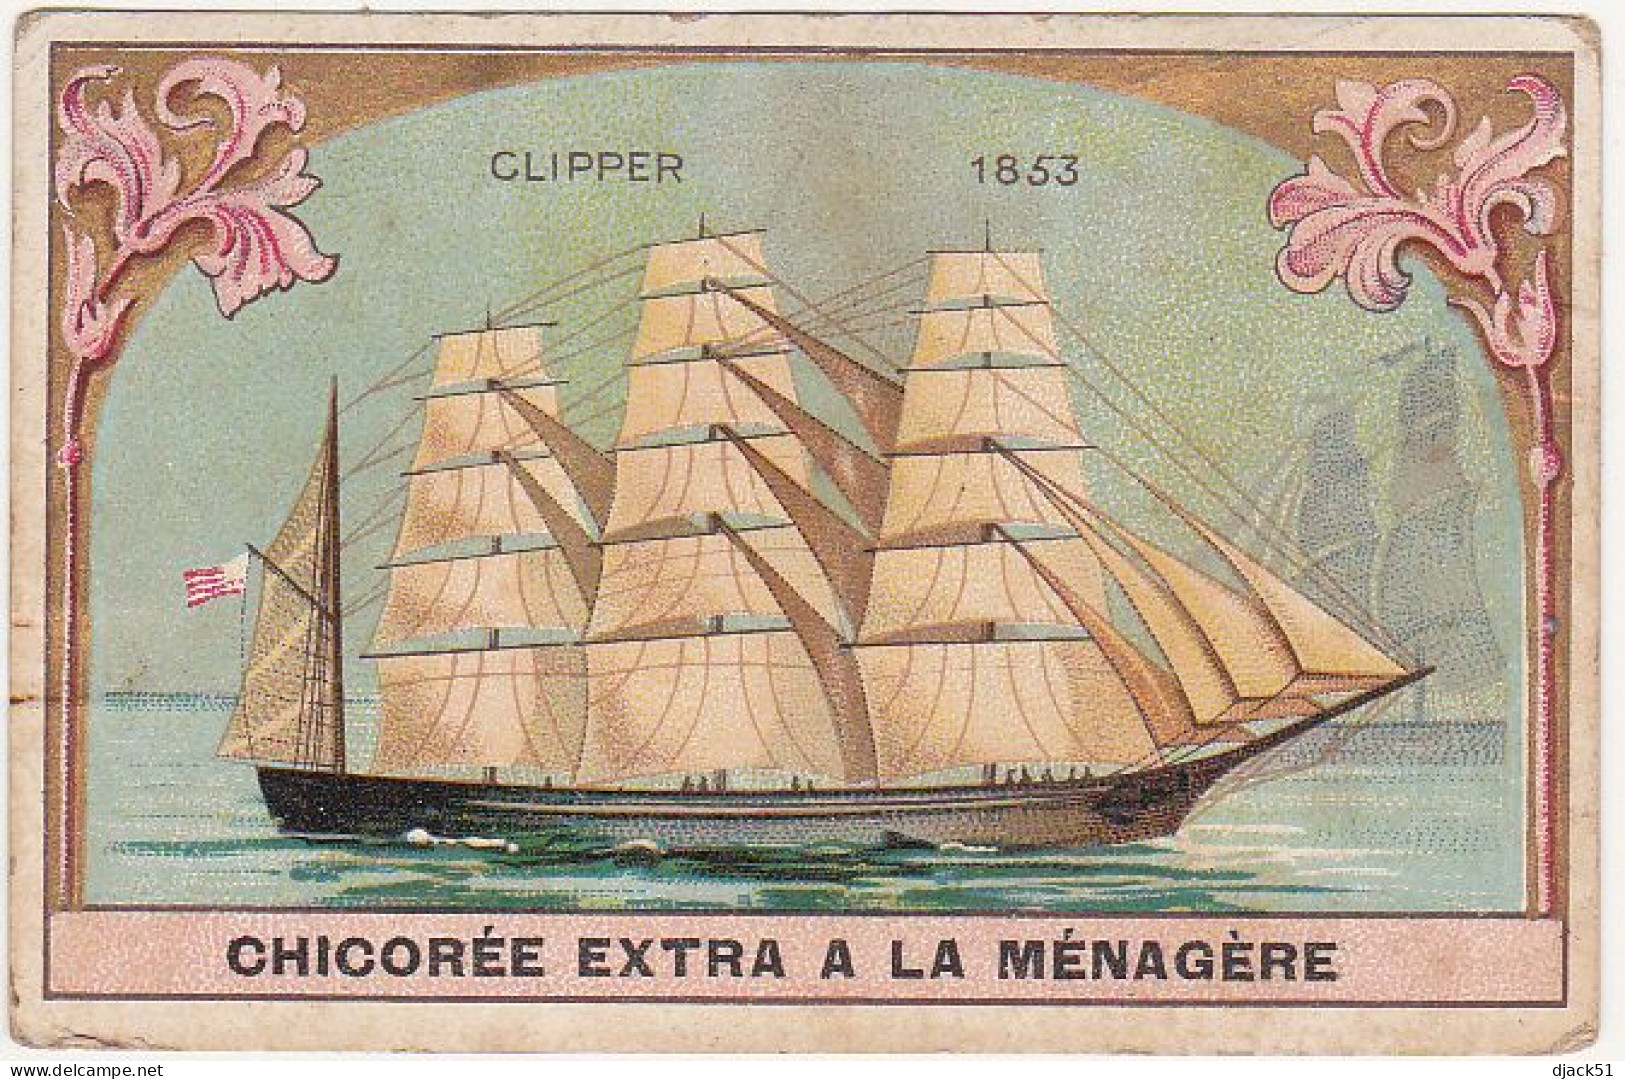 Chromo / CHOCOLAT DUROYON & RAMETTE CAMBRAI / CHICOREE A LA MENAGERE / CLIPPER 1853 (Voilier) - Duroyon & Ramette